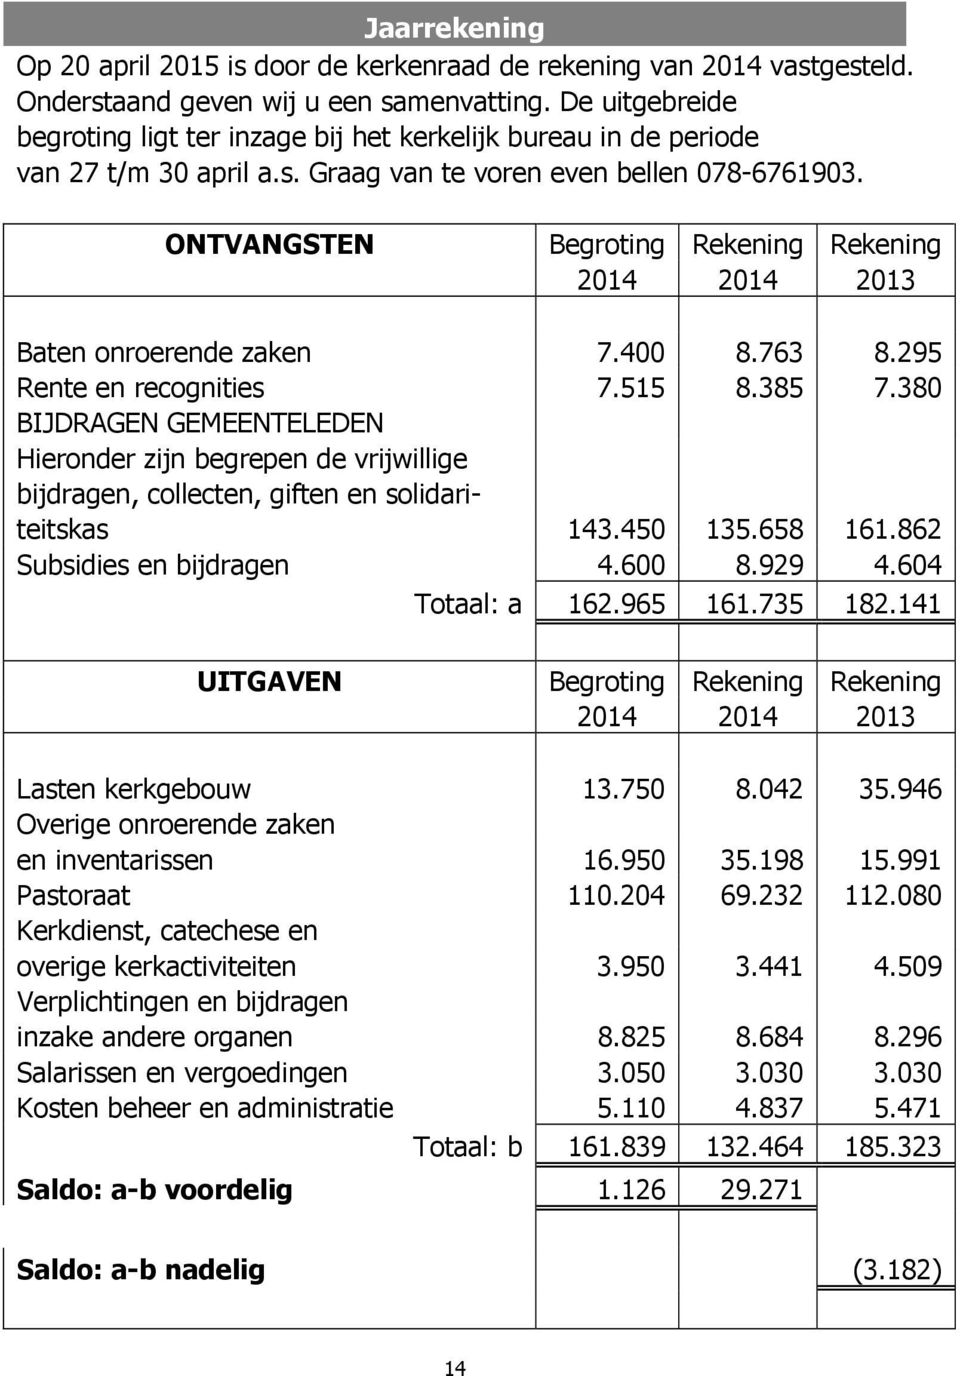 ONTVANGSTEN Begroting Rekening Rekening 2014 2014 2013 Baten onroerende zaken 7.400 8.763 8.295 Rente en recognities 7.515 8.385 7.